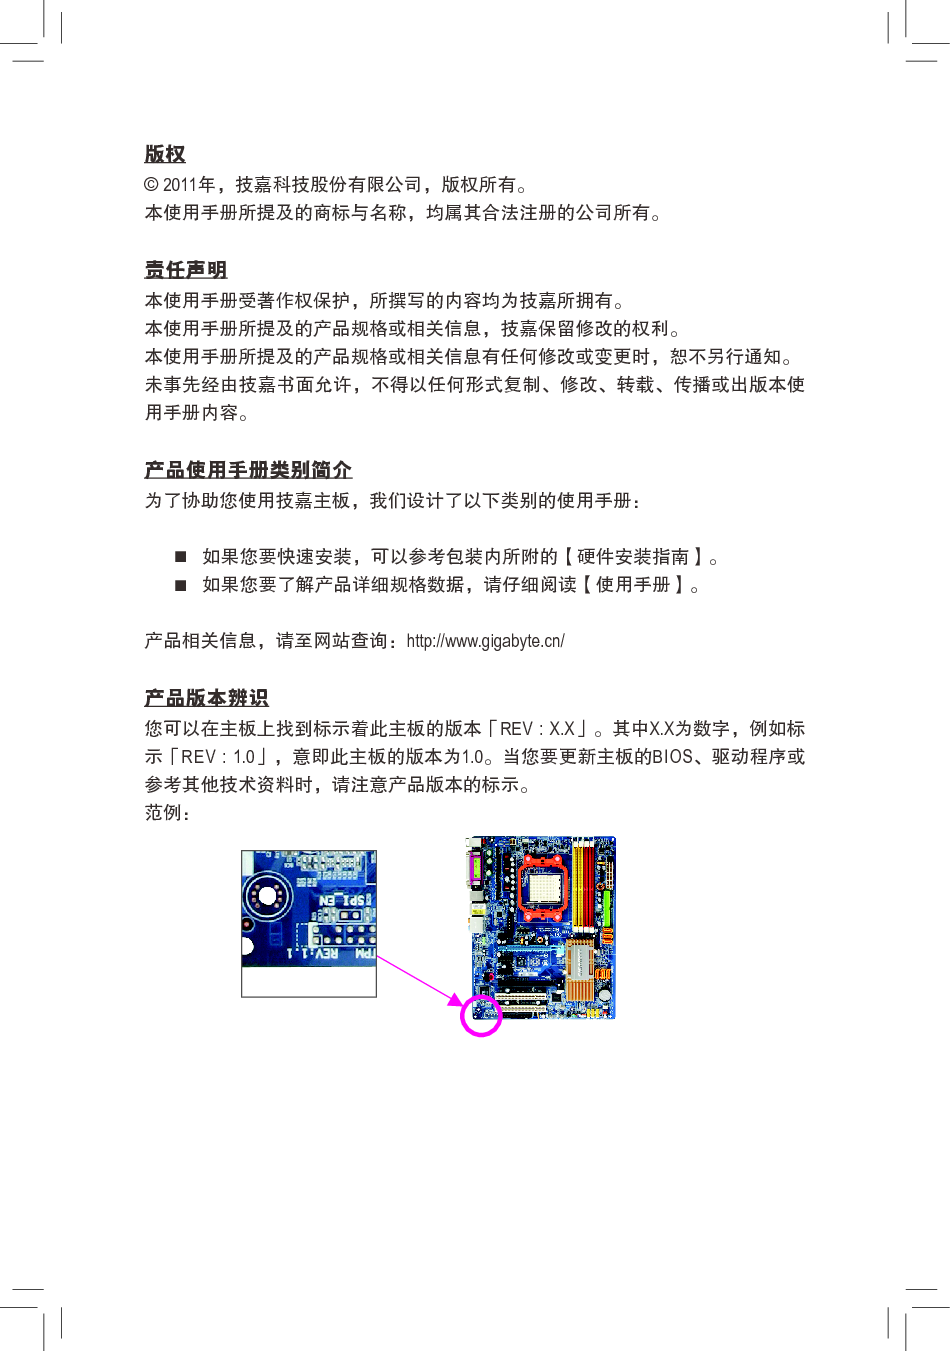 技嘉 Gigabyte GA-MA770T-UD3 3101版 使用手册 第2页